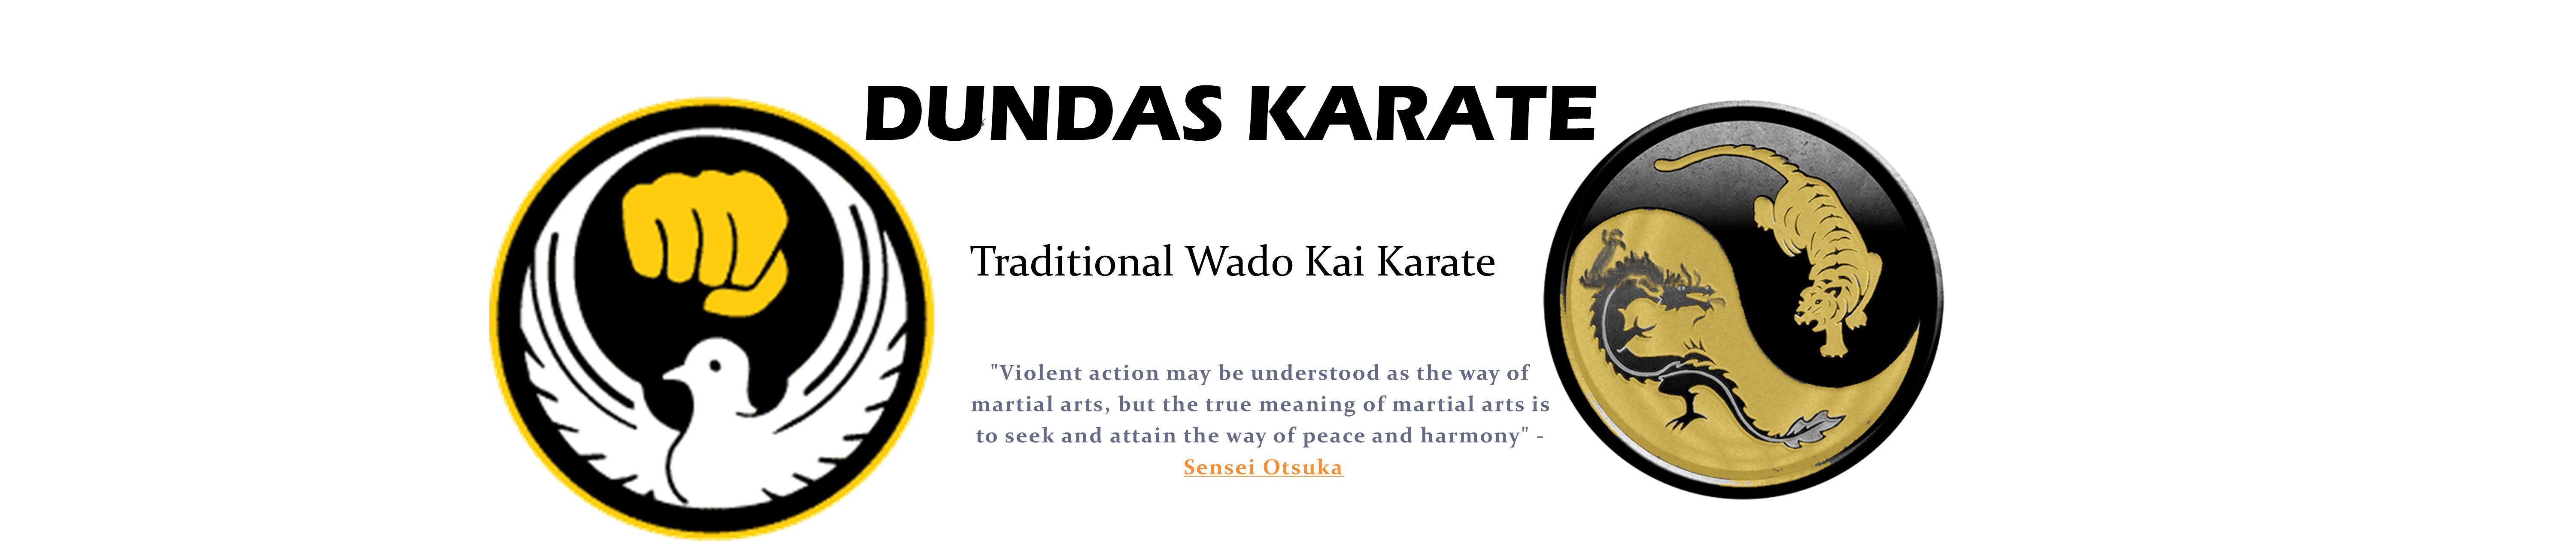 Dundas Karate